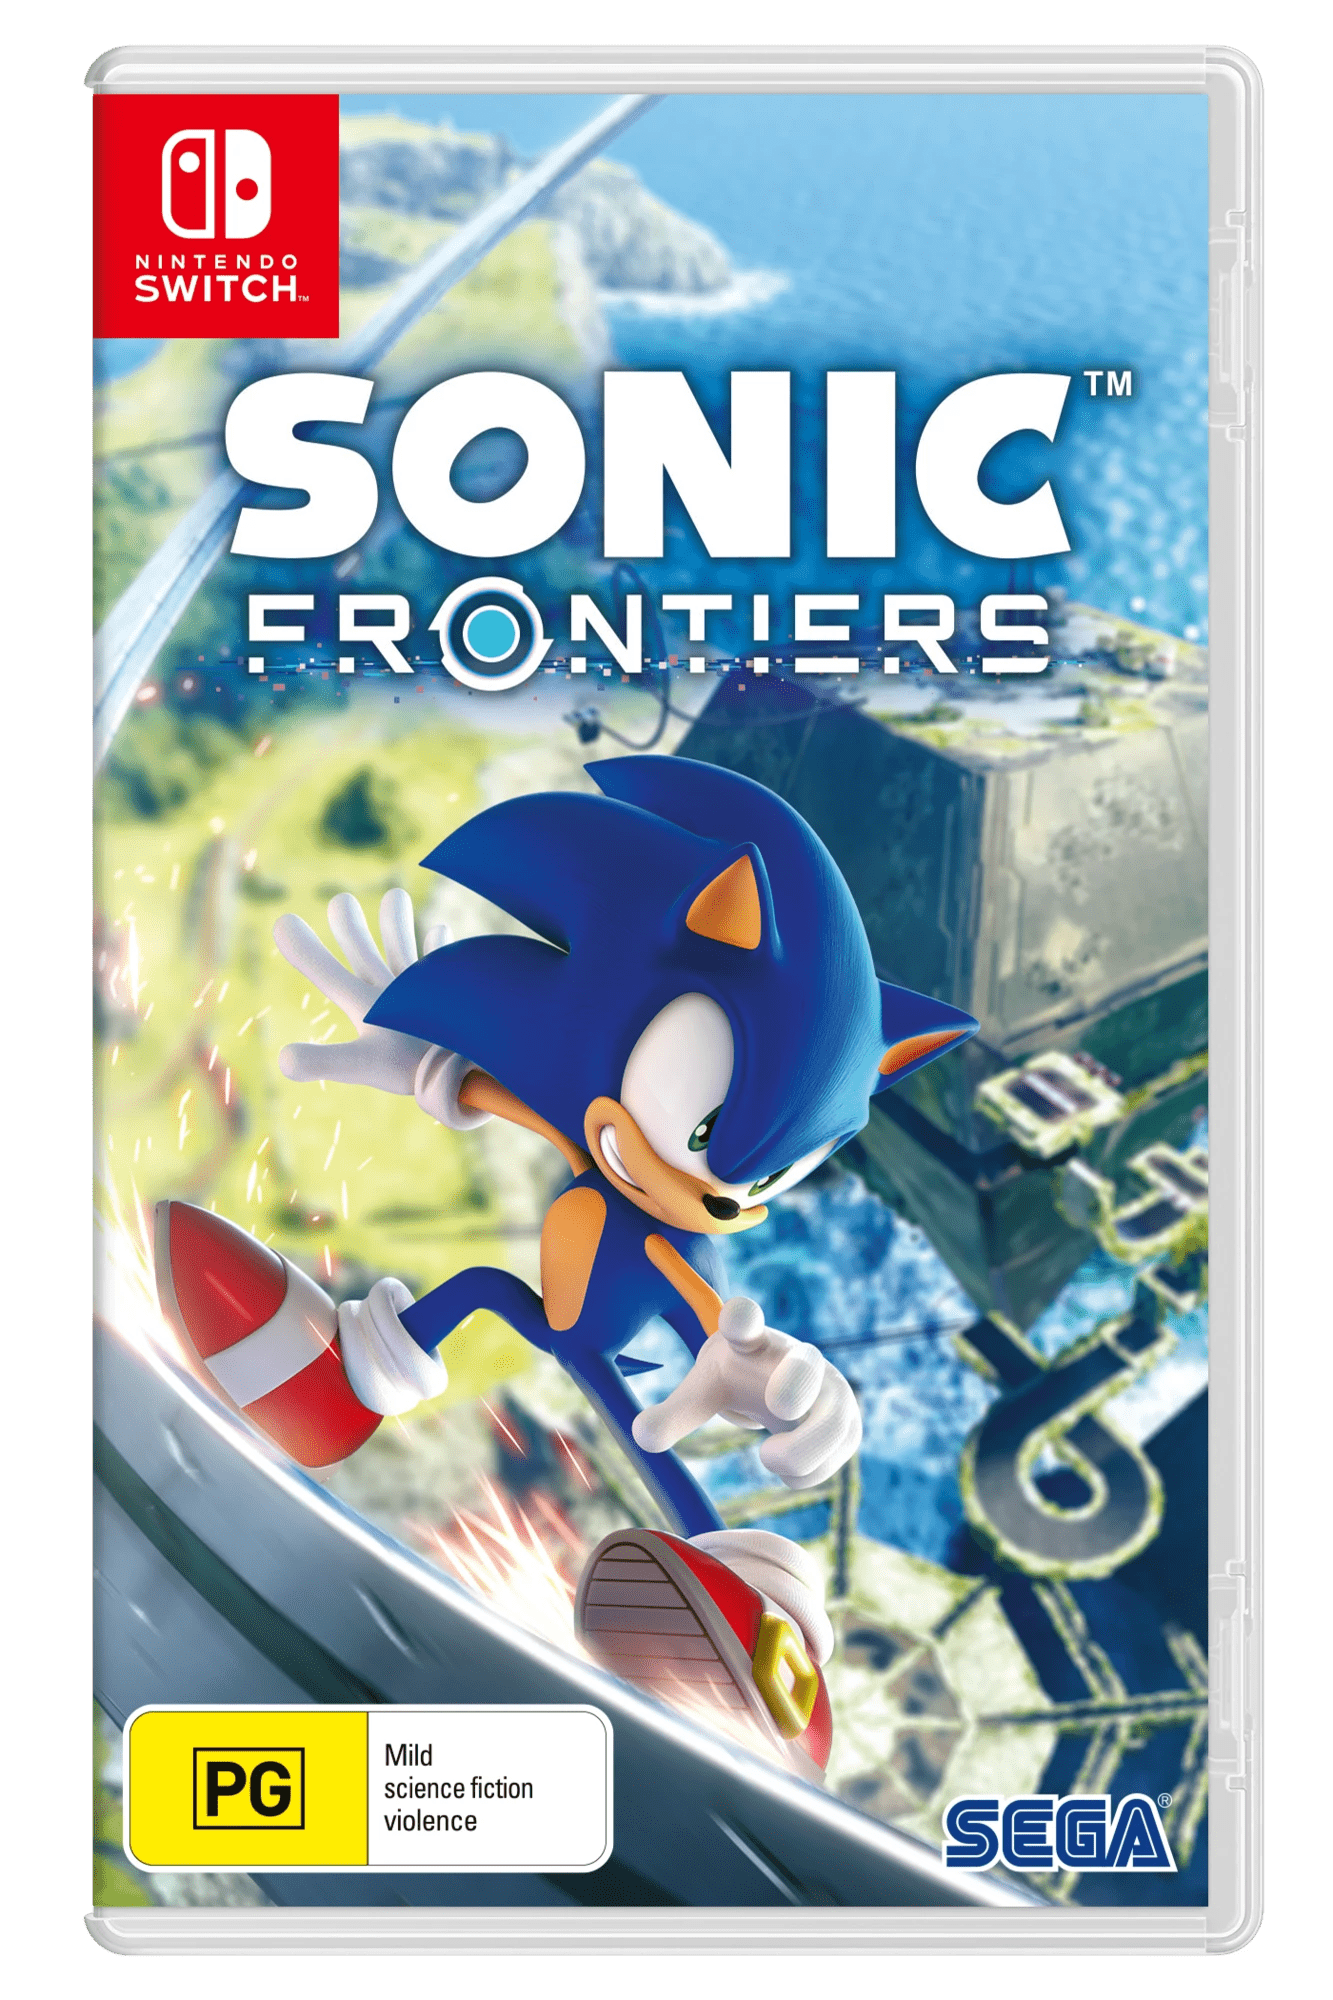 Sonic Frontiers - Nintendo Switch : Target